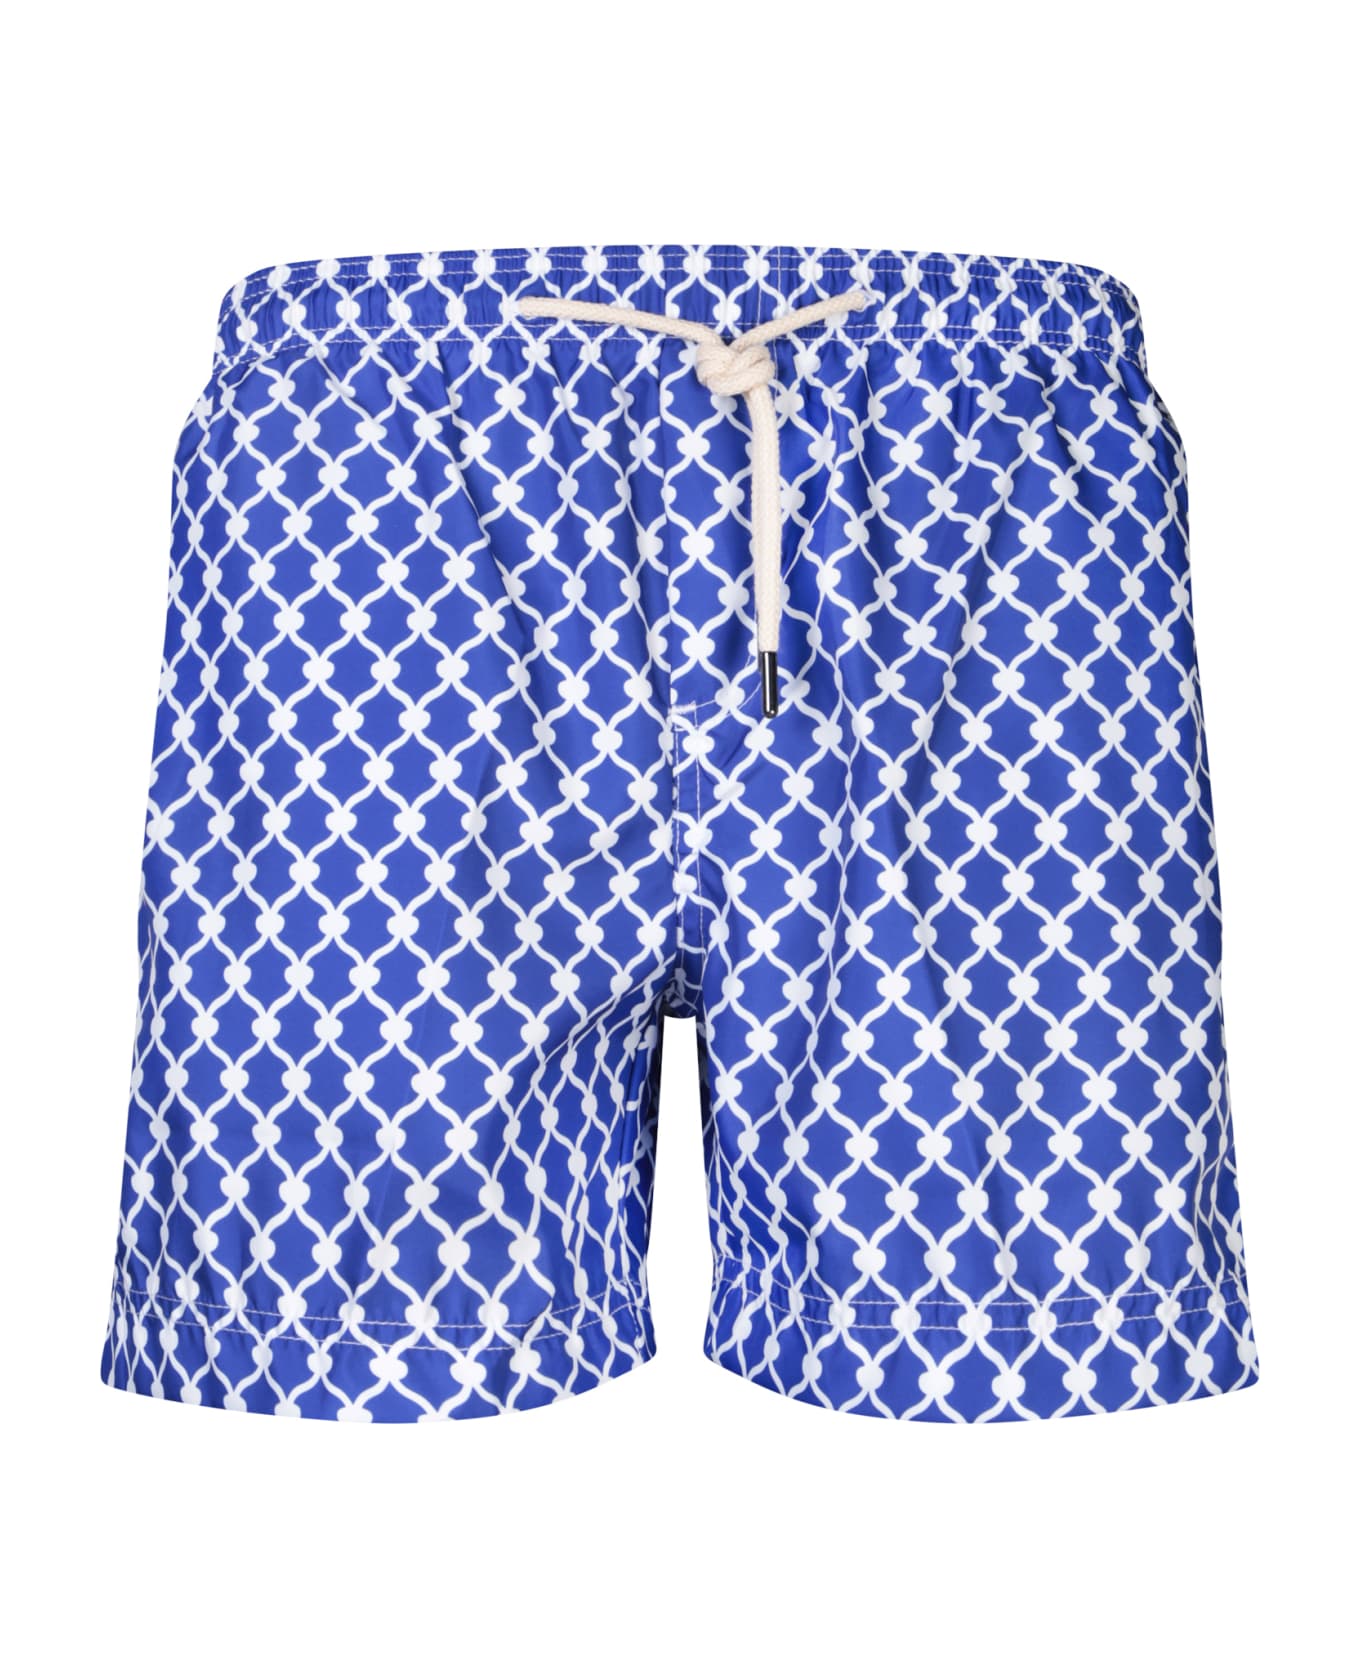 Peninsula Swimwear Patterned Blue/white Boxer Swim Shorts By Peninsula - White 水着